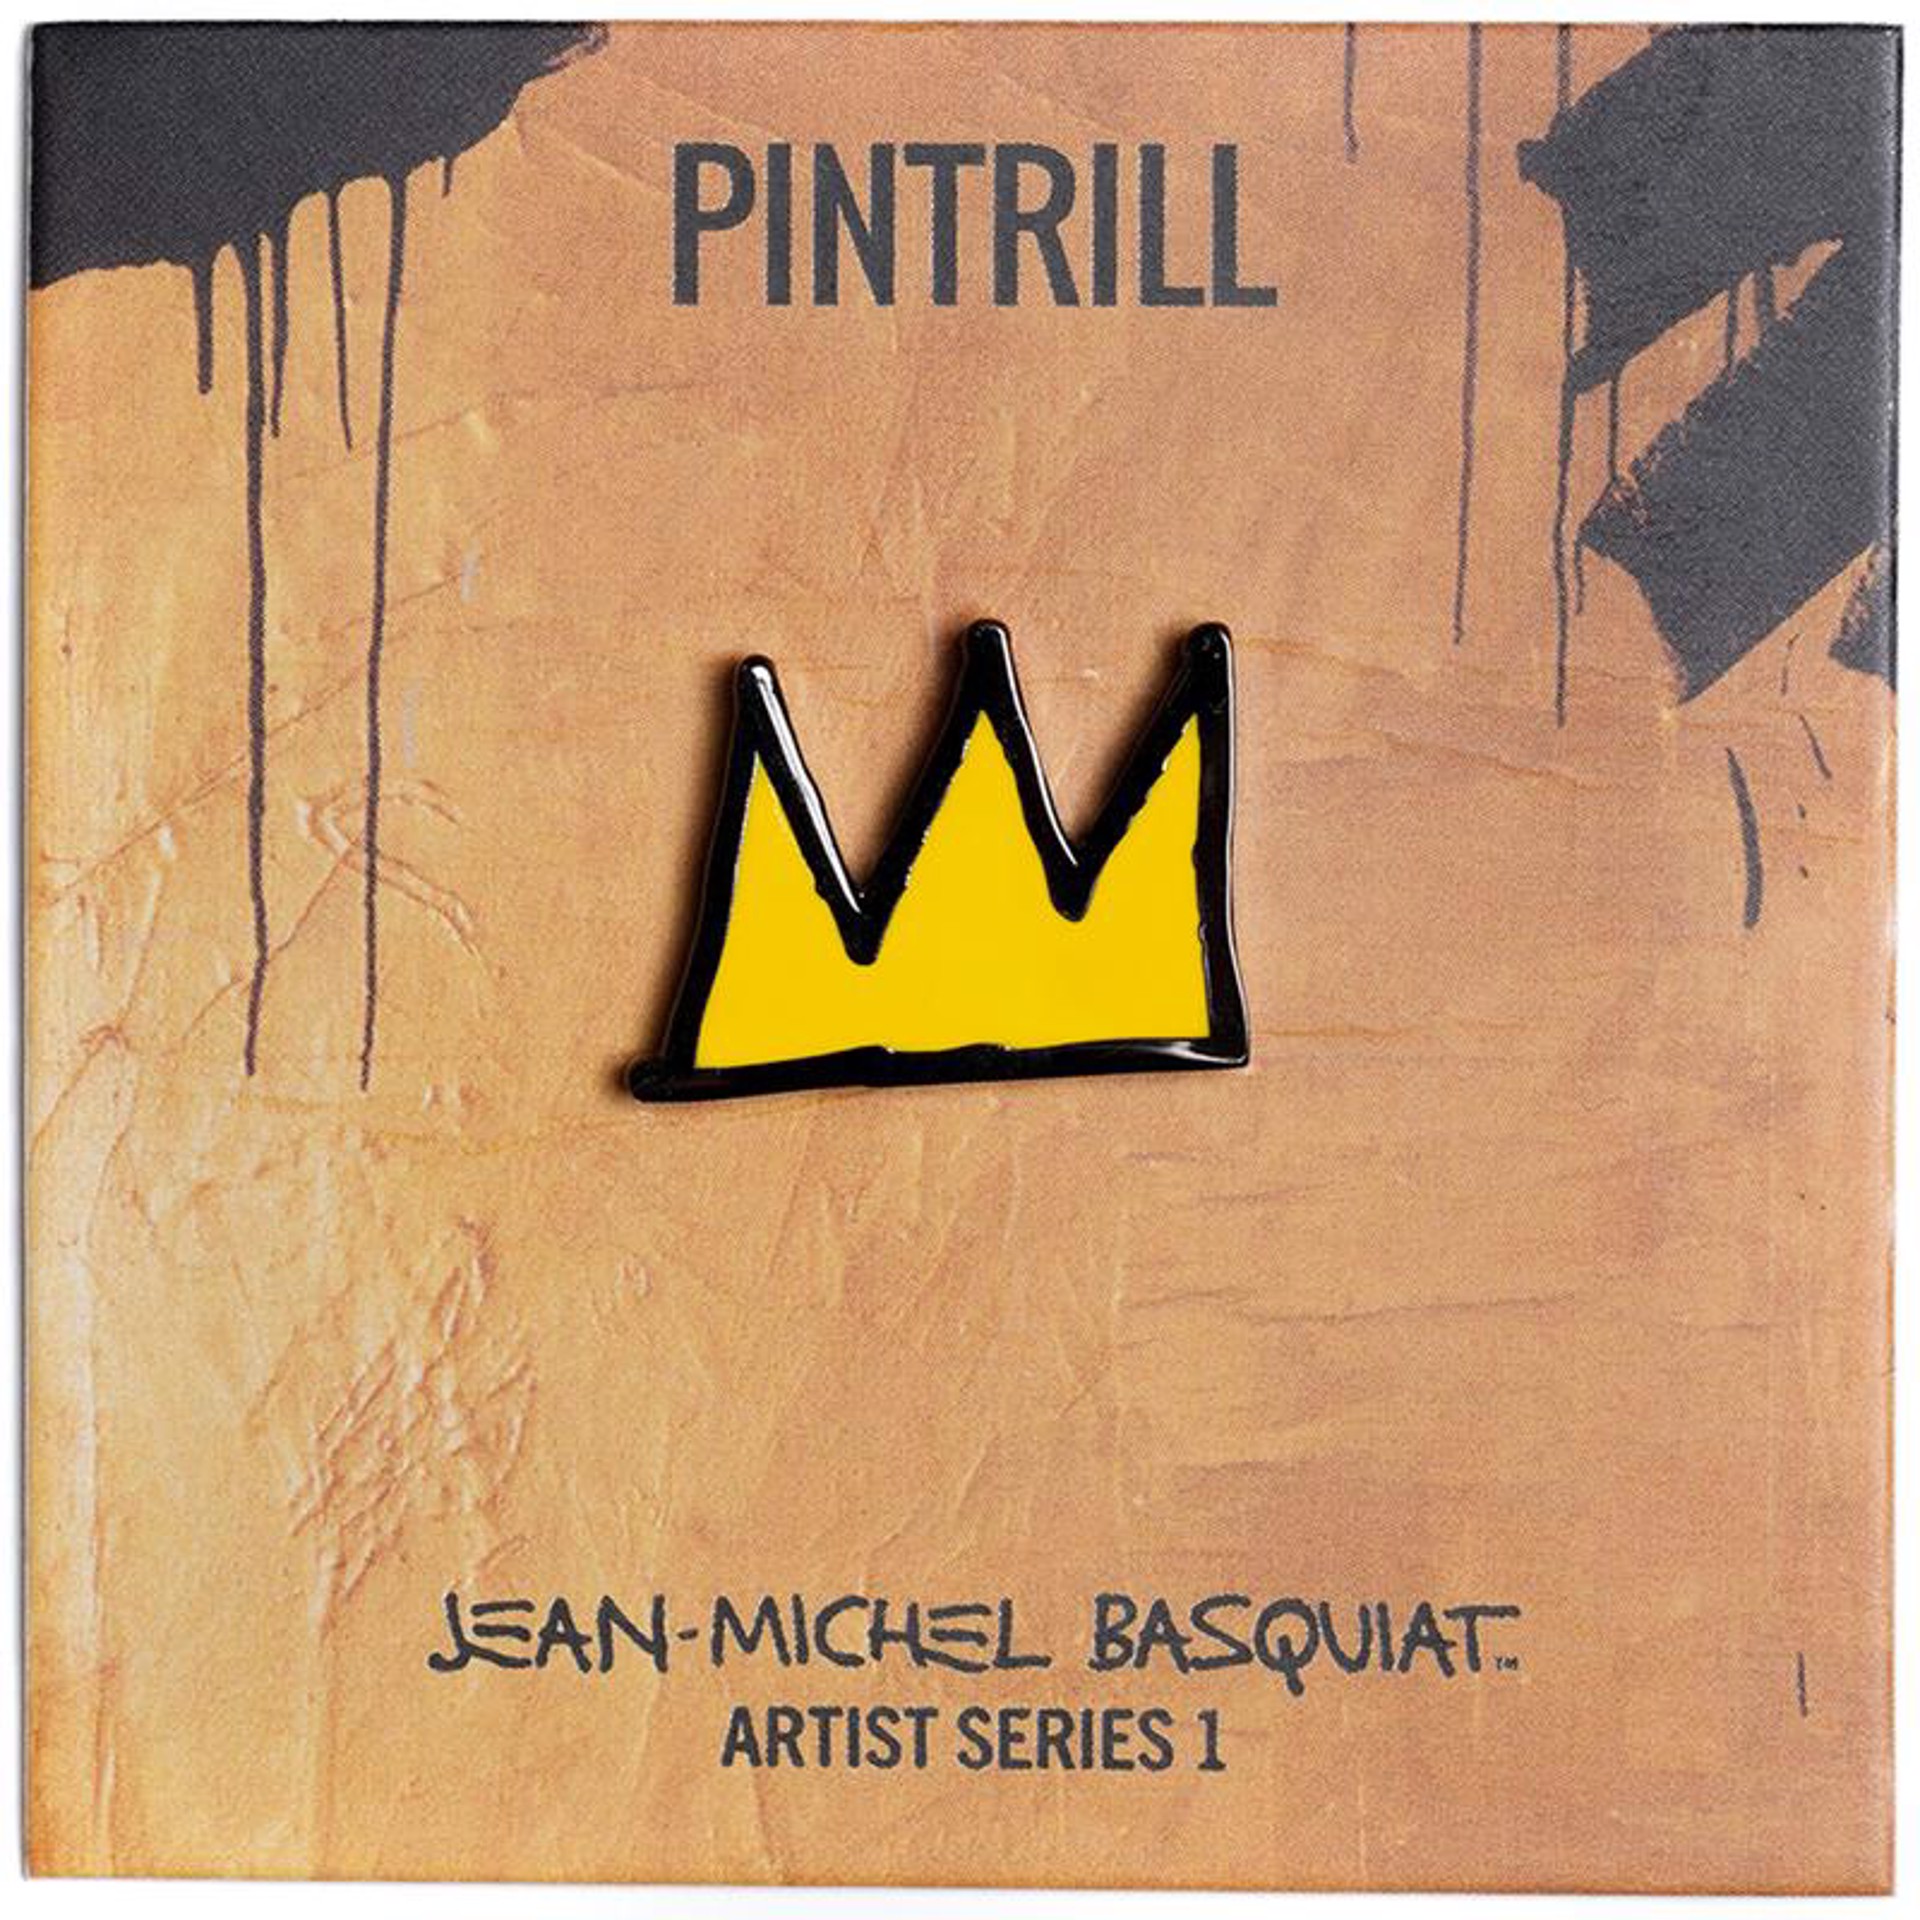 Jean-Michel Basquiat - Crown Pin by Jean-Michel Basquiat